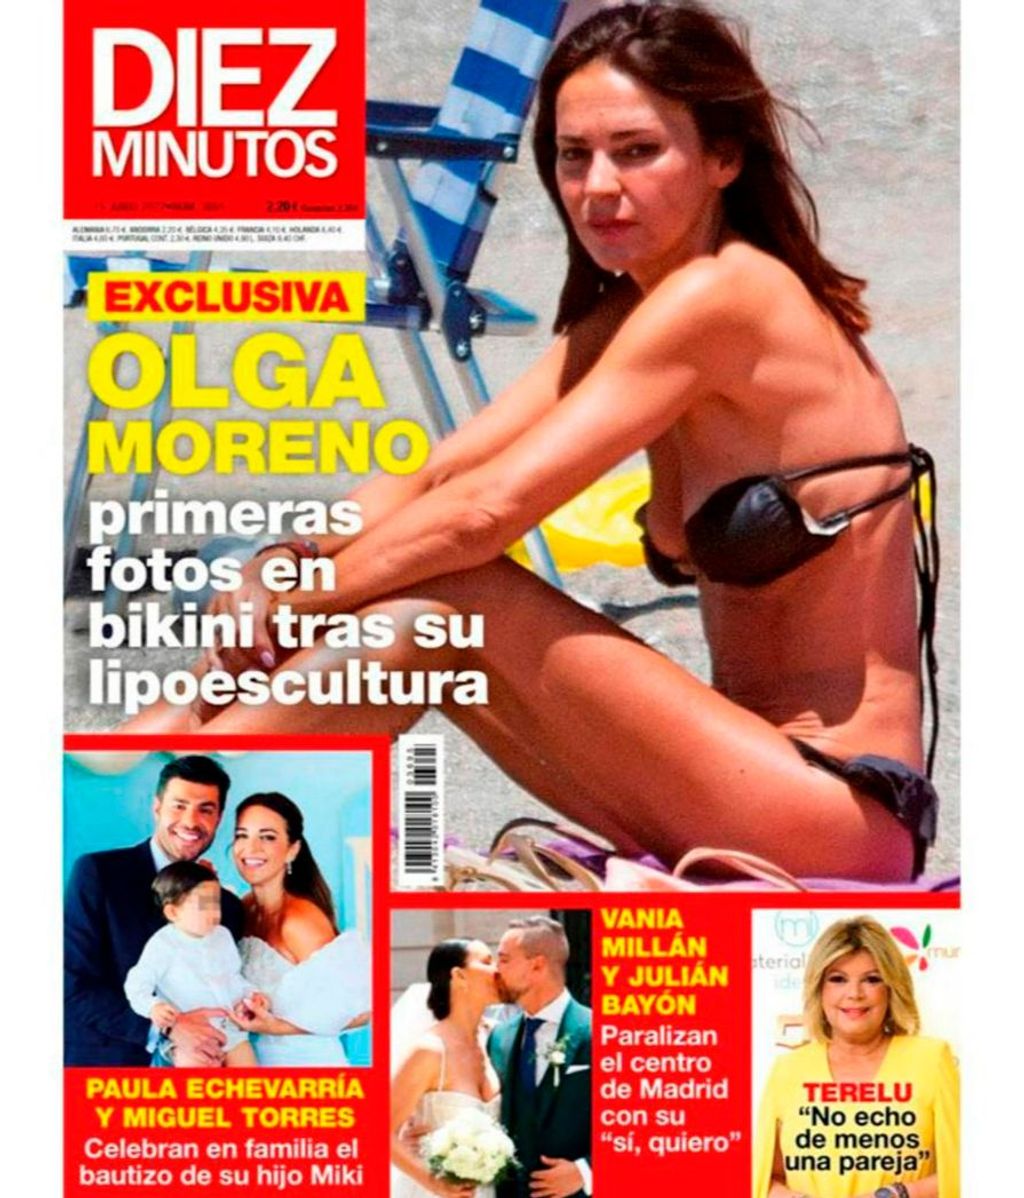 Olga Moreno presume de tipo en bikini tras someterse a una lipoescultura